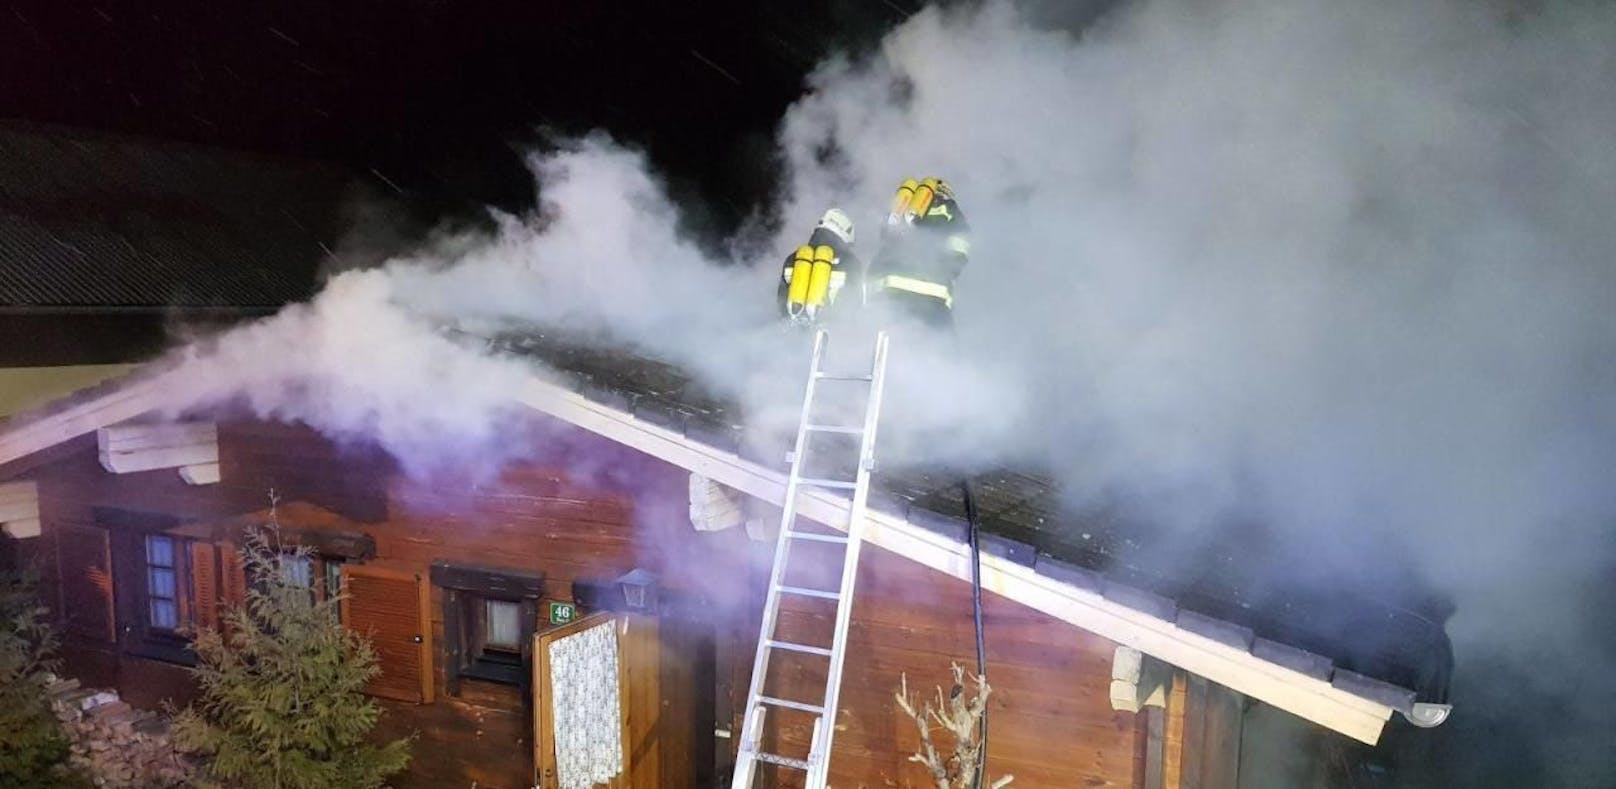 Großeinsatz: Dachstuhl von Wohnhaus in Flammen